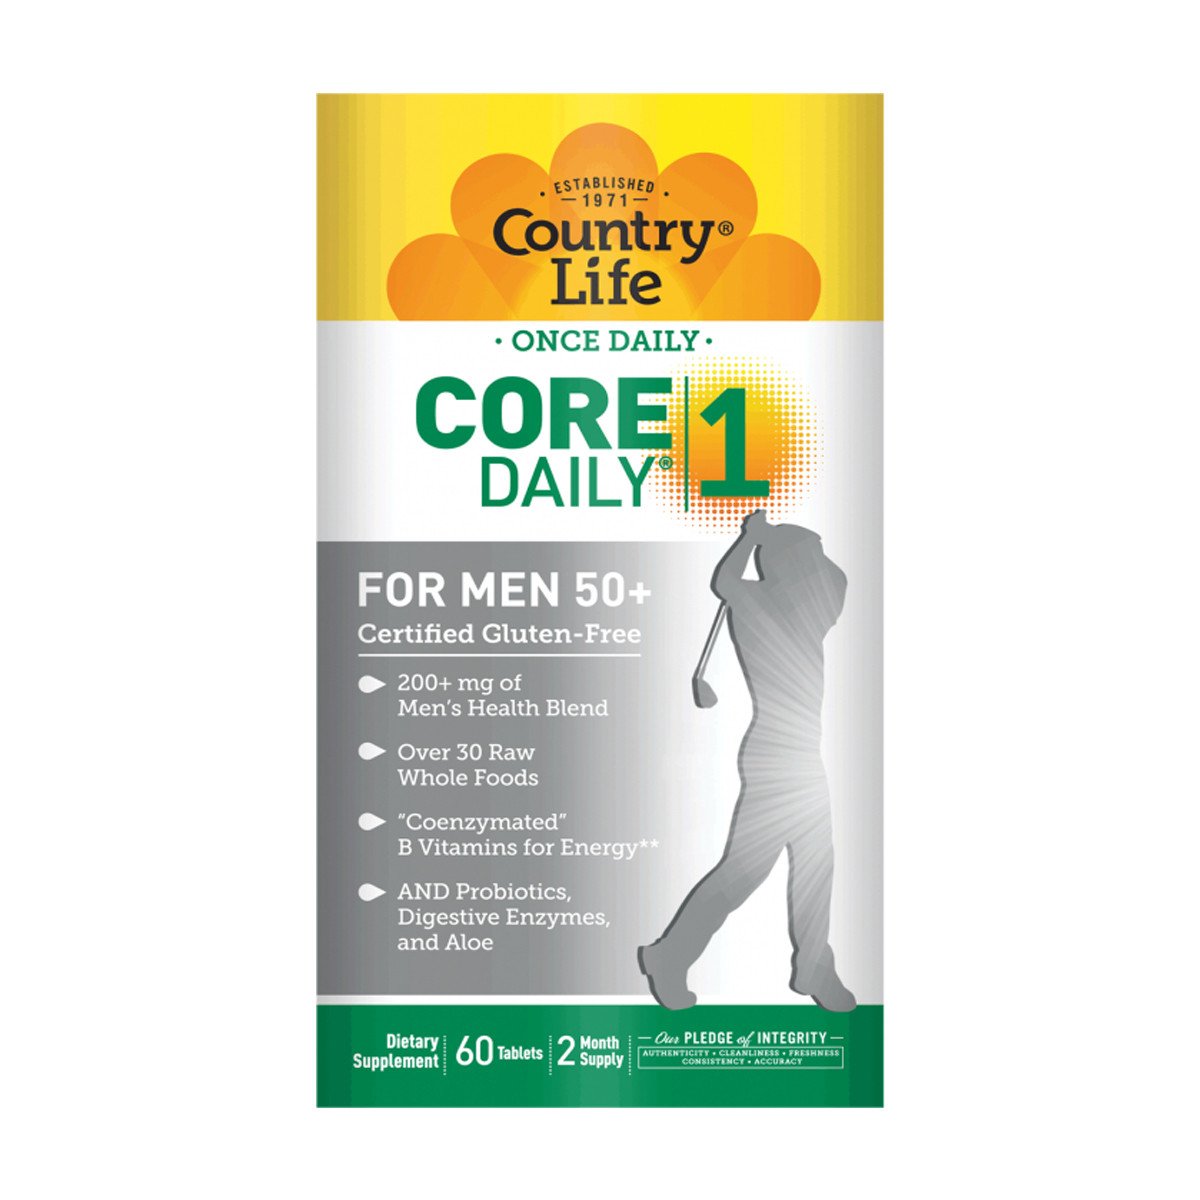 Мультивитамины для Мужчин, 50+, Core Daily-1 for Men 50+, Country Life, 60 таблеток,  мл, Country Life. Витамины и минералы. Поддержание здоровья Укрепление иммунитета 